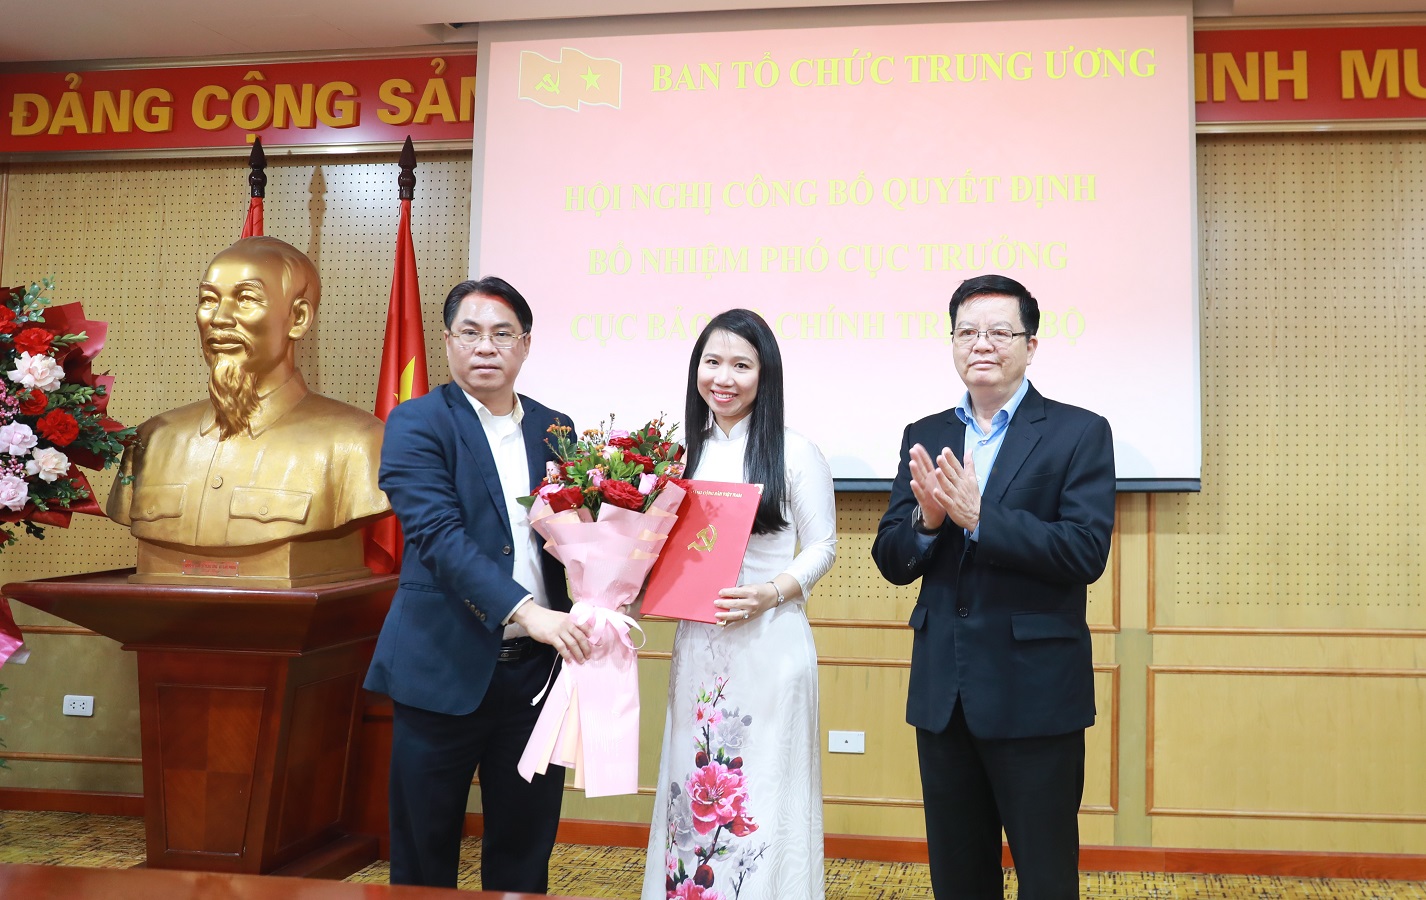 Lãnh đạo Ban Tổ chức Trung ương trao Quyết định và tặng hoa chúc mừng tân Phó Cục trưởng Cục bảo vệ chính trị nội bộ.